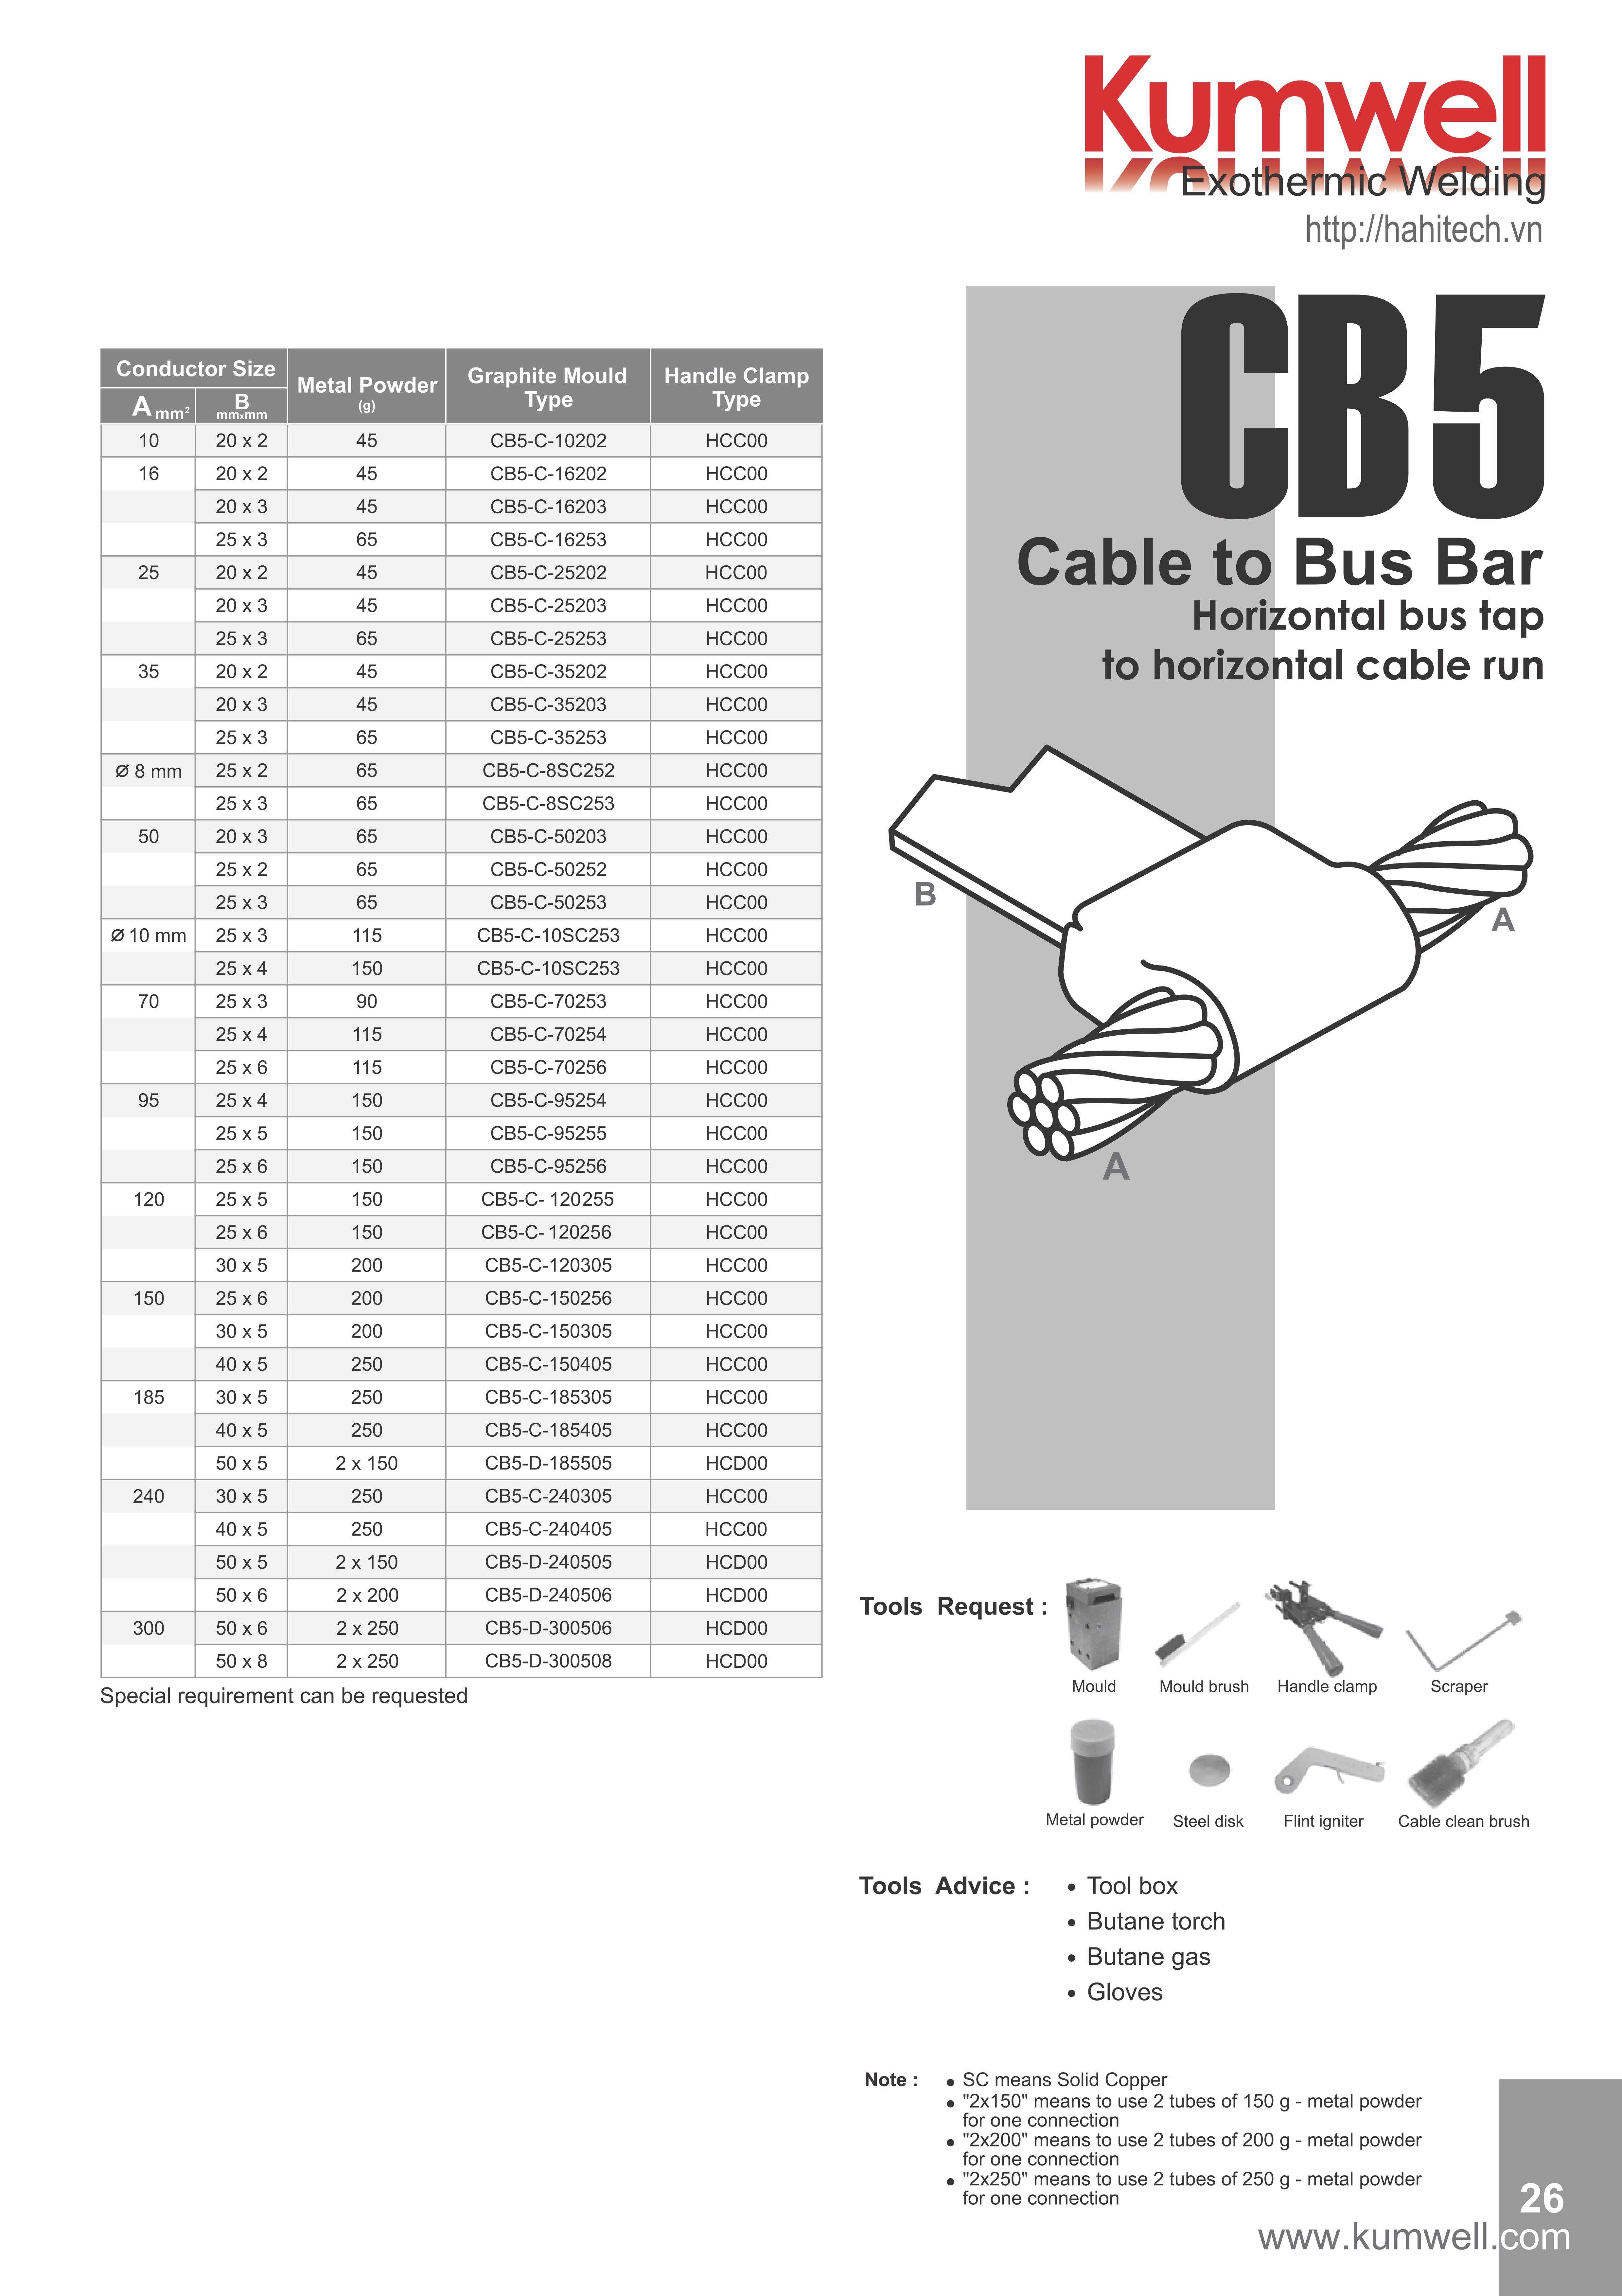 CB5-C-50252, khuôn hàn hóa nhiệt vuông góc nối cáp đồng trần M50 - 50mm2 với băng thanh đồng 25x2, khuôn hàn hóa nhiệt